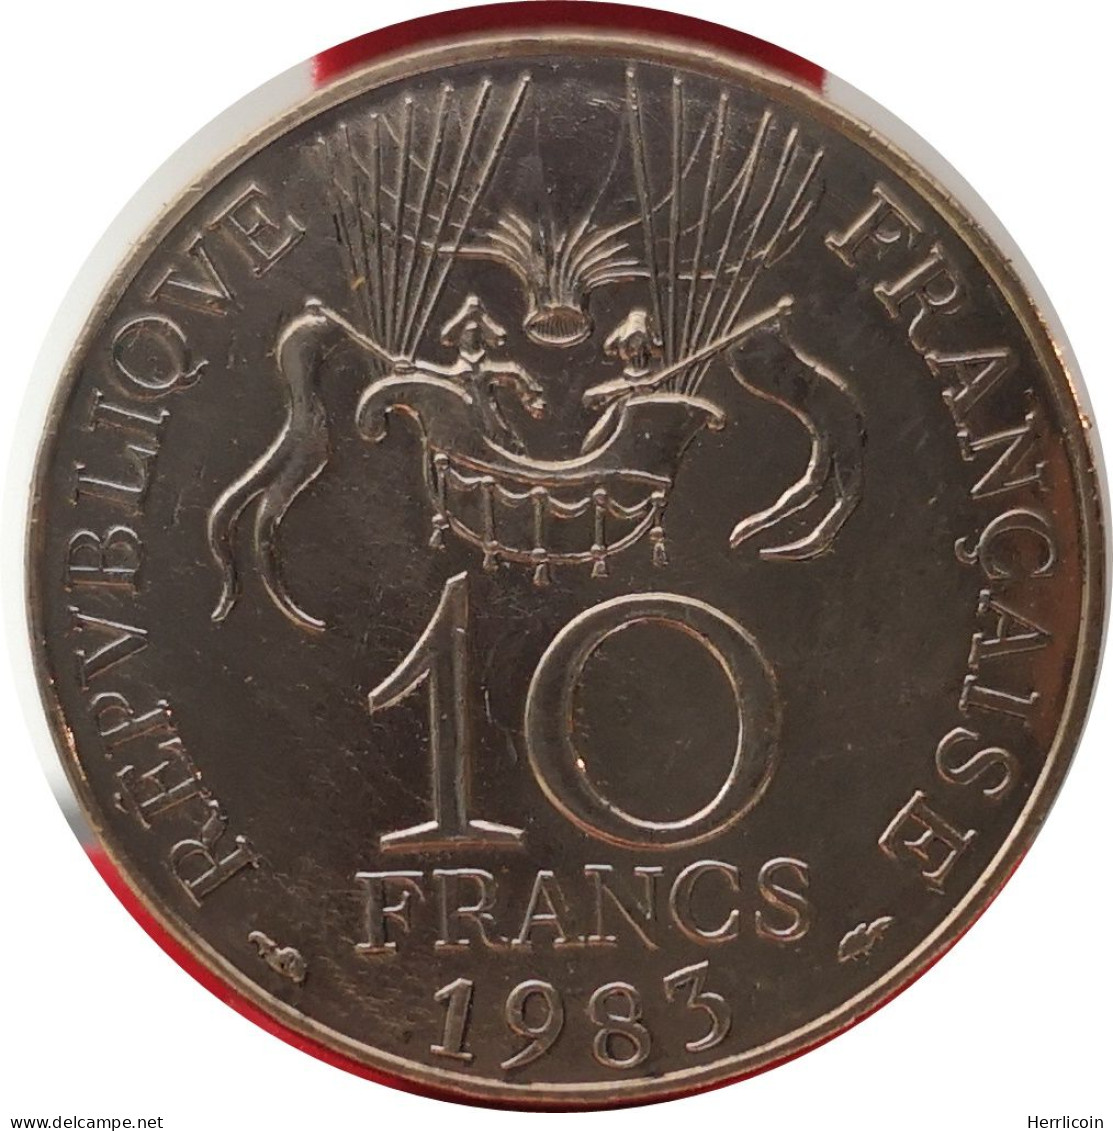 Monnaie France - 1983 Tranche A - 10 Francs Conquête De L'Espace - Commemoratives